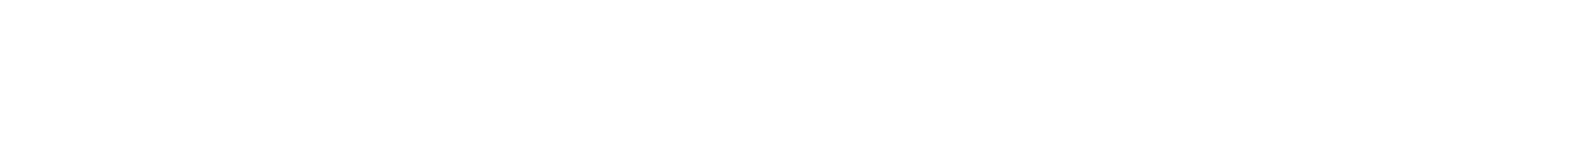 Autodesk logo large for dark backgrounds (transparent PNG)